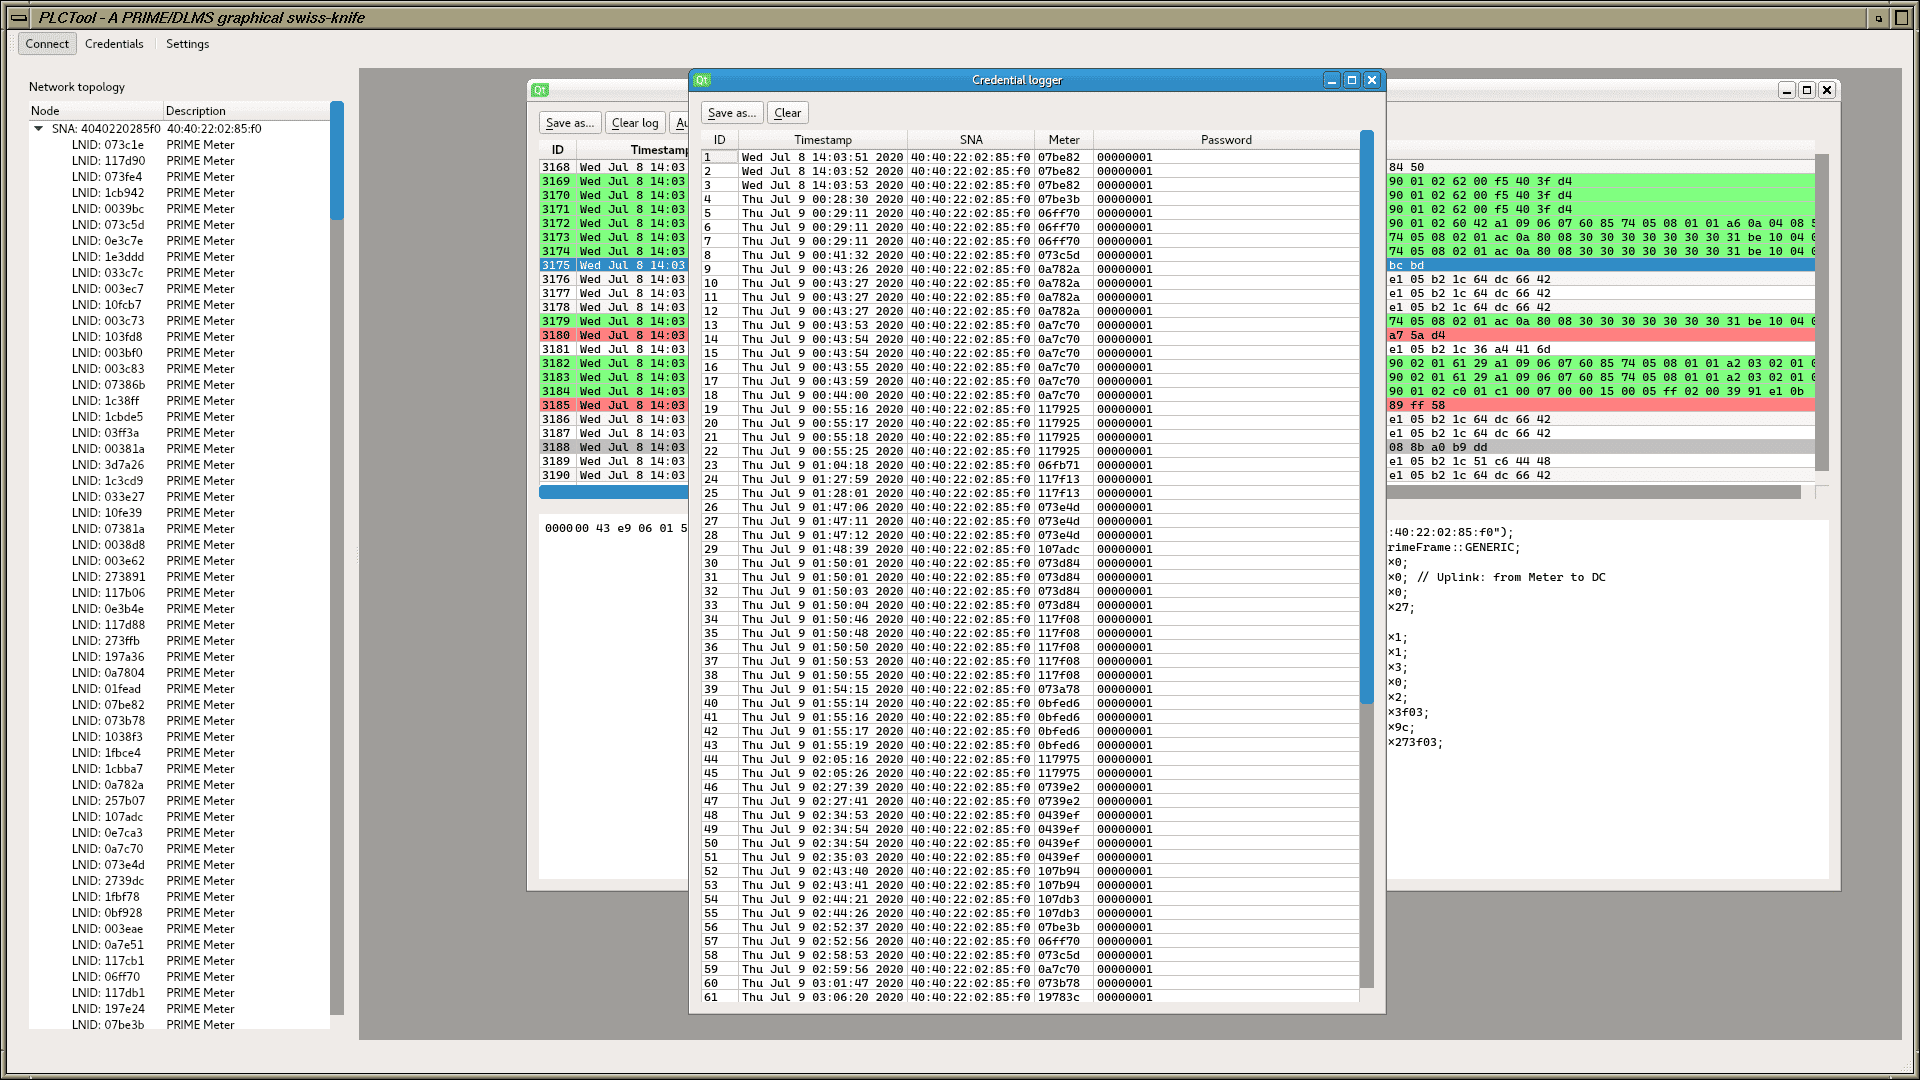 Contraseñas de la capa DLMS capturadas tras observar tráfico sin cifrar con perfil 0 de PRIME 1.3.6 desde el enchufe del domicilio de un particular, mediante la herramienta PLCTool.